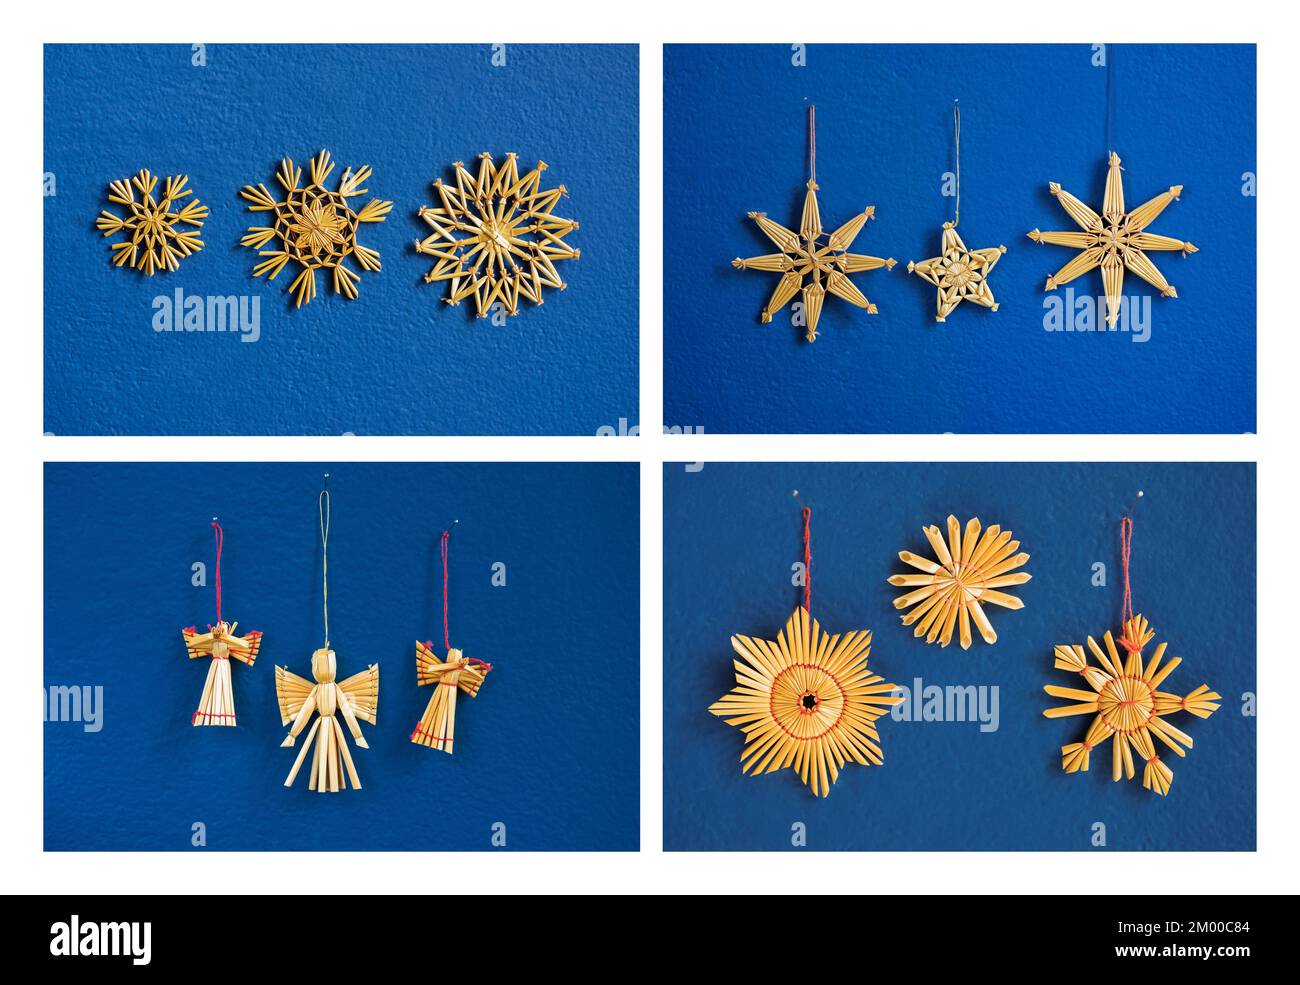 Quatre photos de petite décoration de noël en paille sur fond de mur bleu. (3 étoiles, 3 flocons de neige, 3 anges et 3 coeurs) Banque D'Images